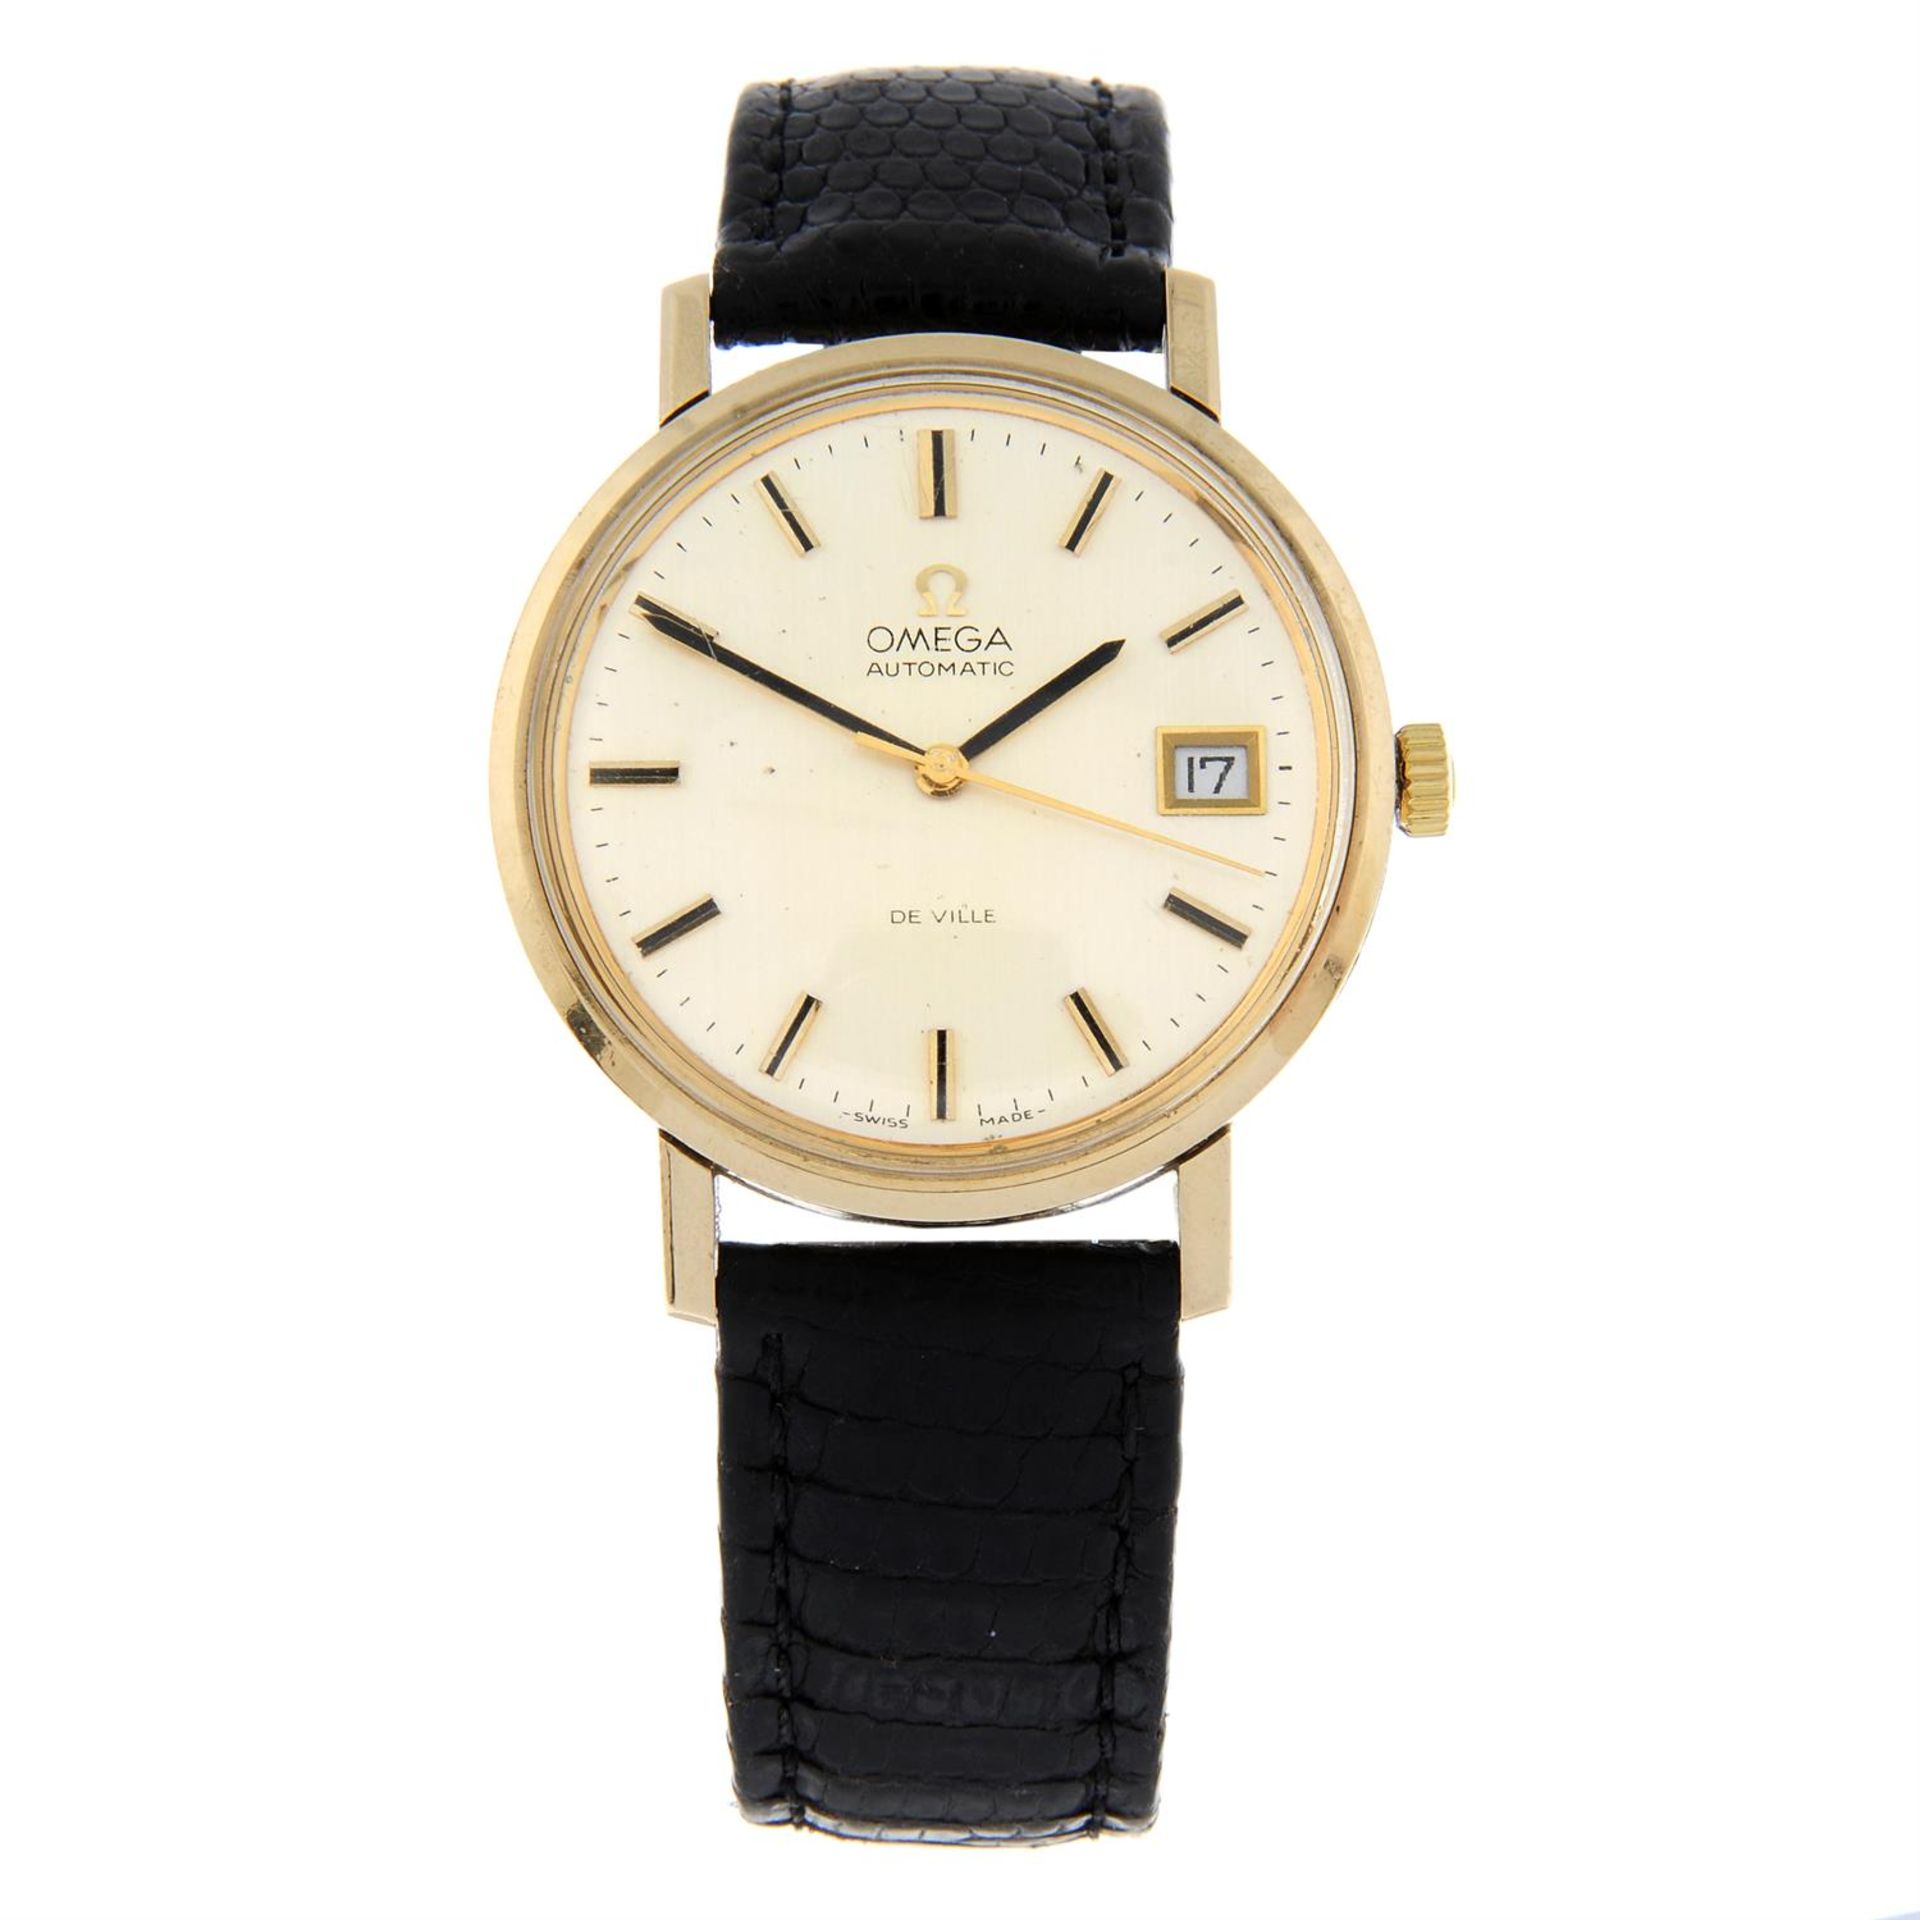 OMEGA - a 9ct yellow gold De Ville wrist watch, 35mm.